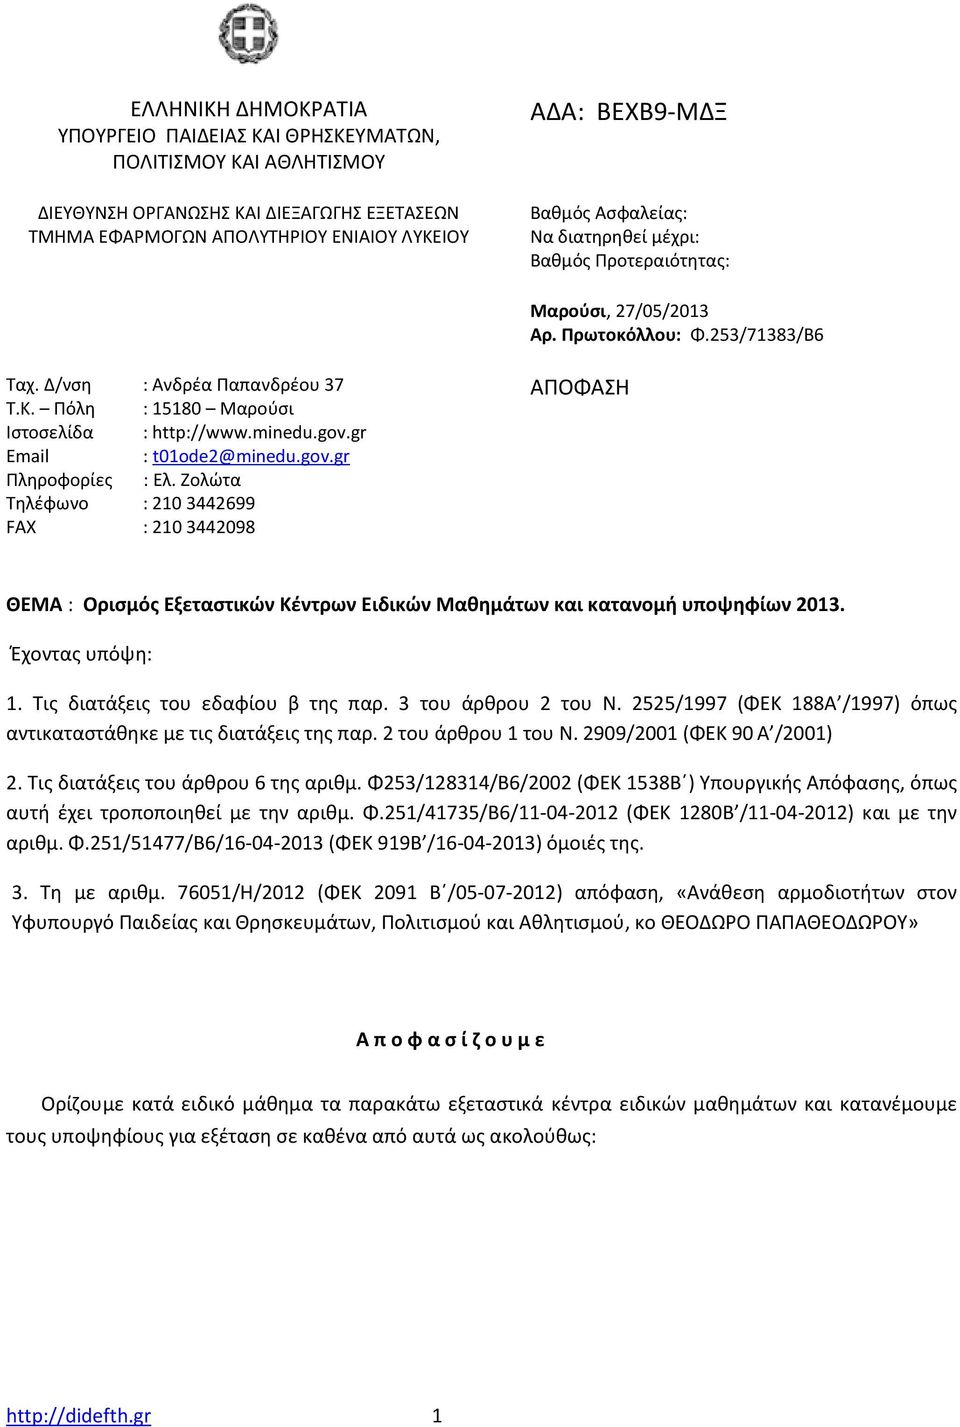 gov.gr Email : t01ode2@minedu.gov.gr Πληροφορίες : Ελ. Ζολώτα Τηλέφωνο : 2103442699 FAX : 2103442098 ΑΠΟΦΑΣΗ ΘΕΜΑ : Ορισμός Εξεταστικών Κέντρων Ειδικών Μαθημάτων και κατανομή υποψηφίων 2013.